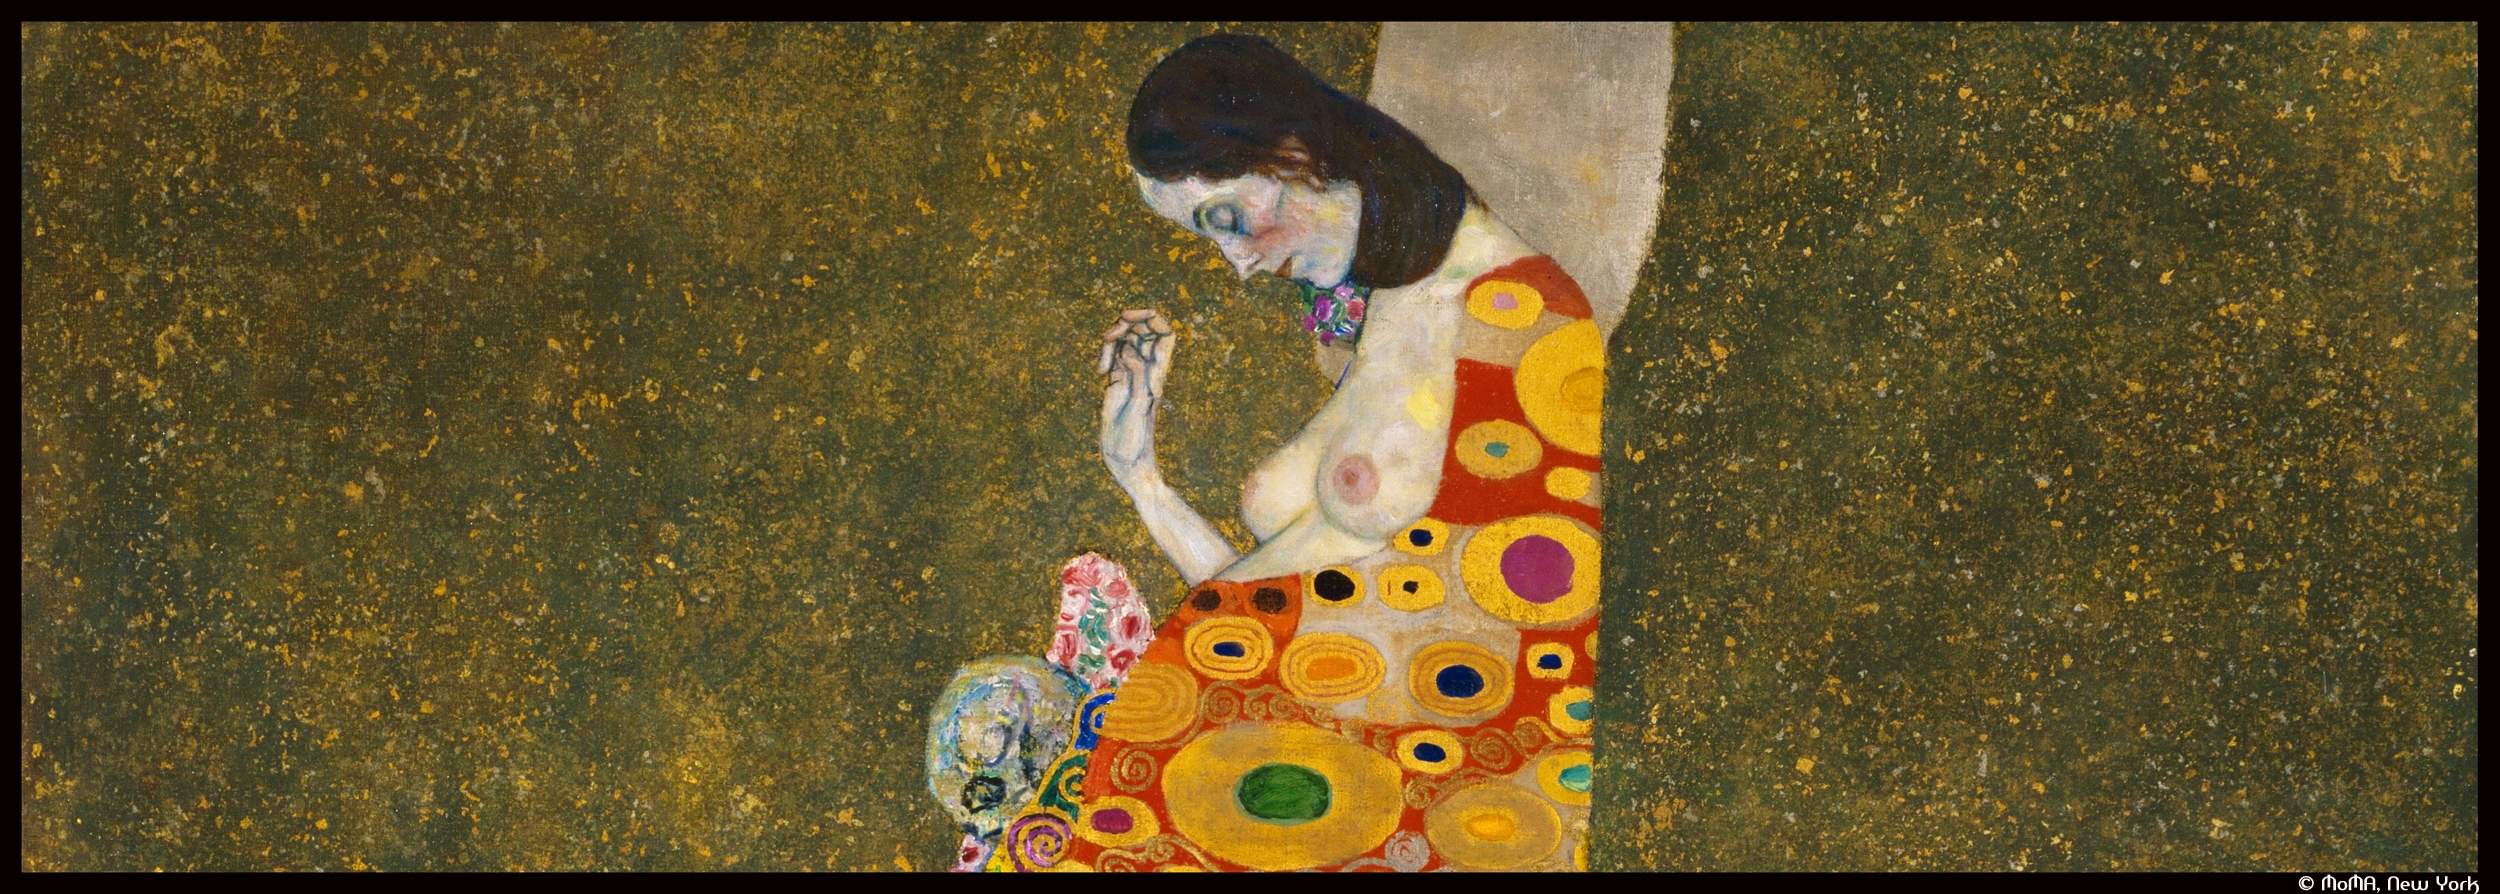 Gustav_Klimt_-_Hope_II_-_MoMA New York_@loeildoliv